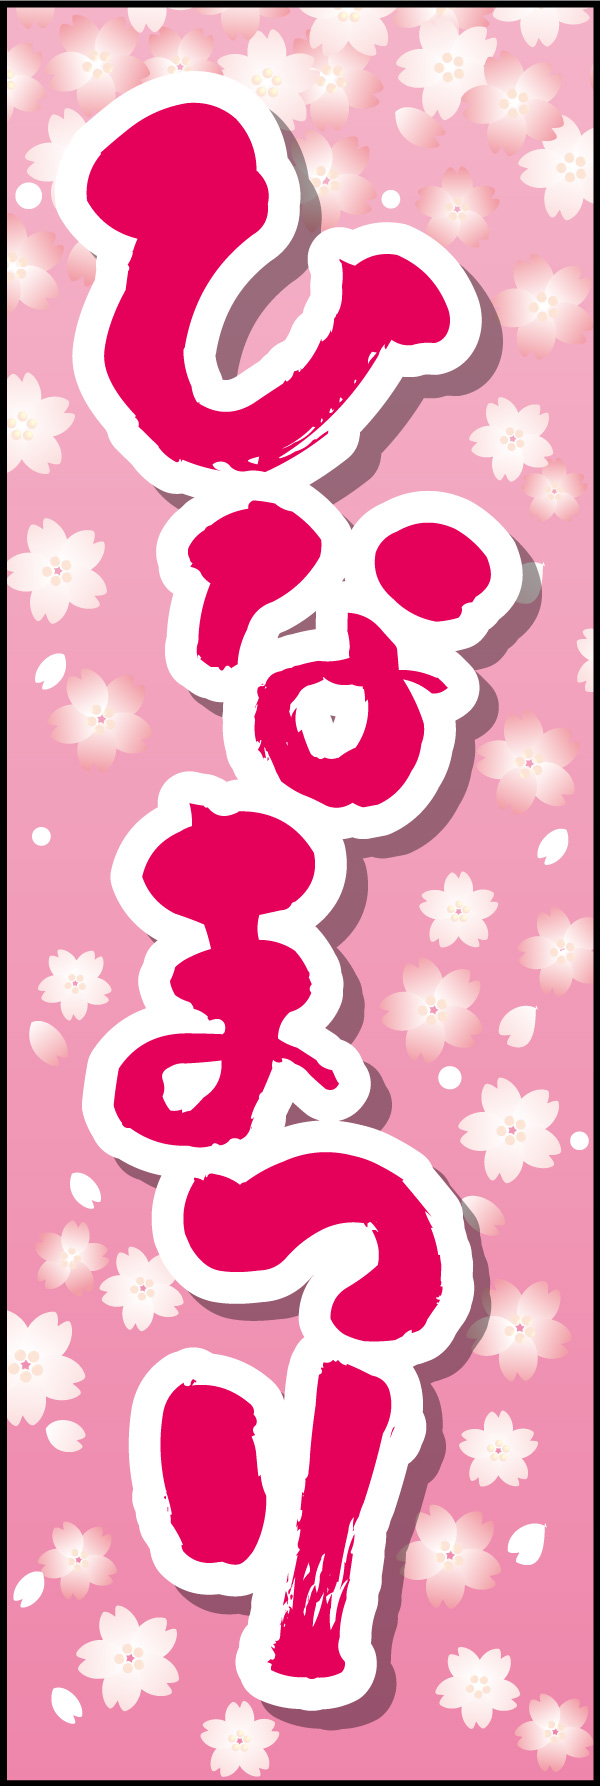 ひなまつり 06 「ひなまつり」の幟です。華やかなピンクと花柄にデザインしました。(Y.M)